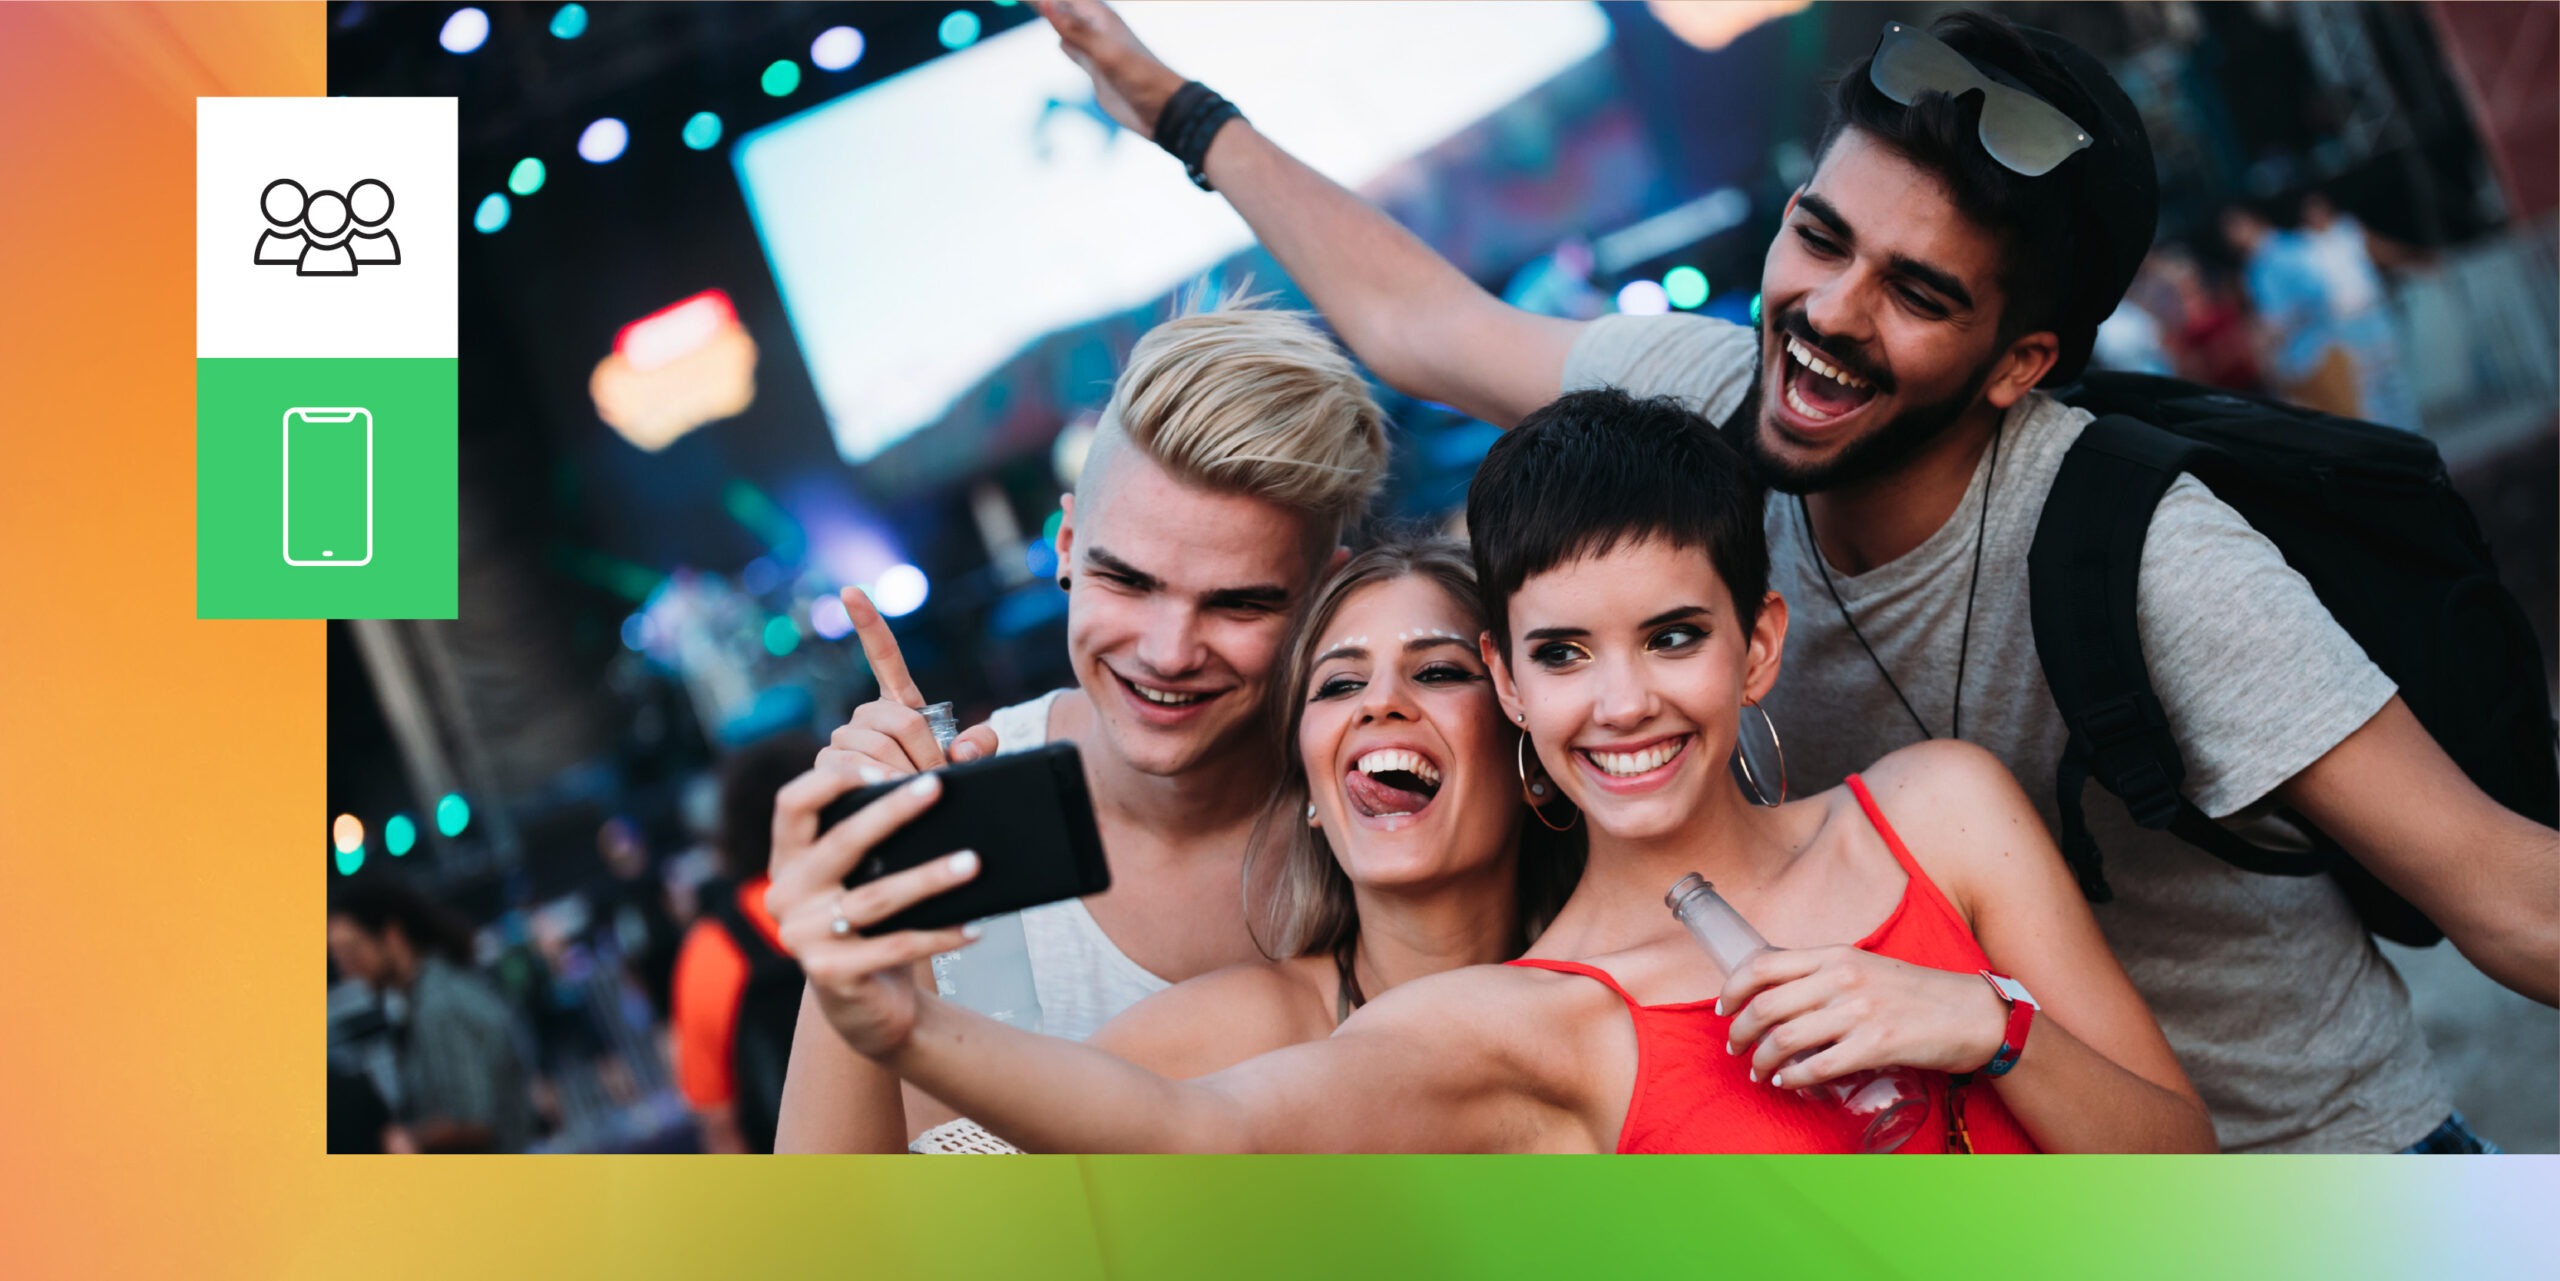 Grupo de quatro amigos posa para uma selfie em um show. Trata-se da prática de UGC, user generated content, o conteúdo gerado pelo participante.